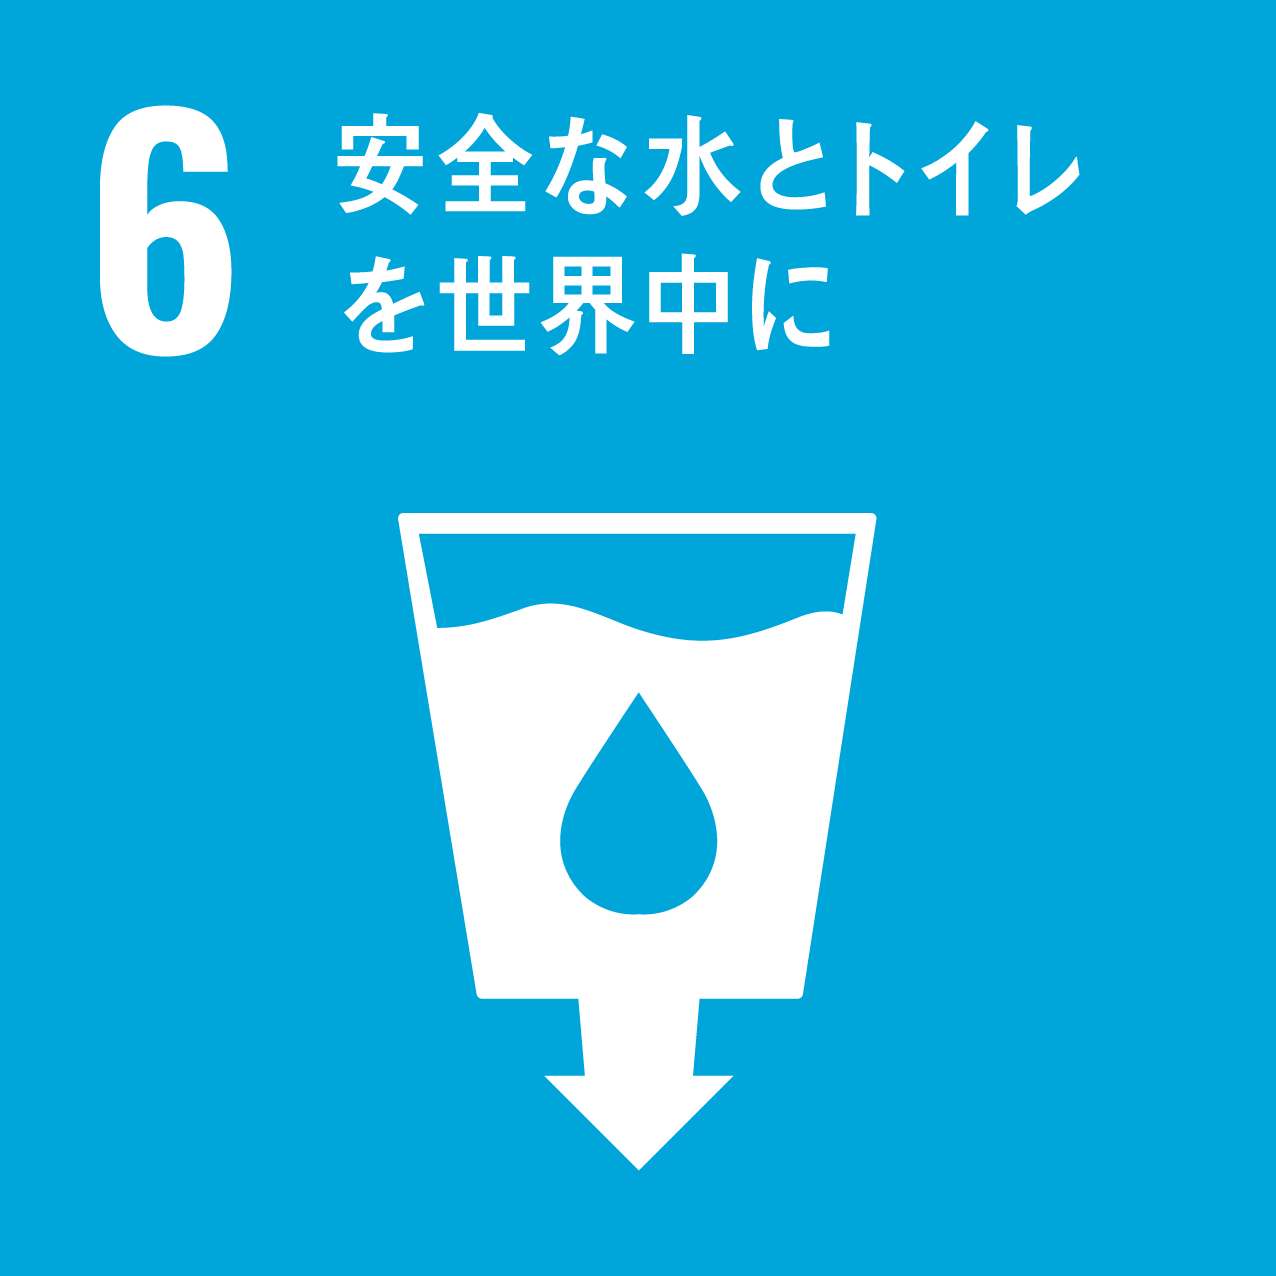 6.安全な水とトイレを世界に